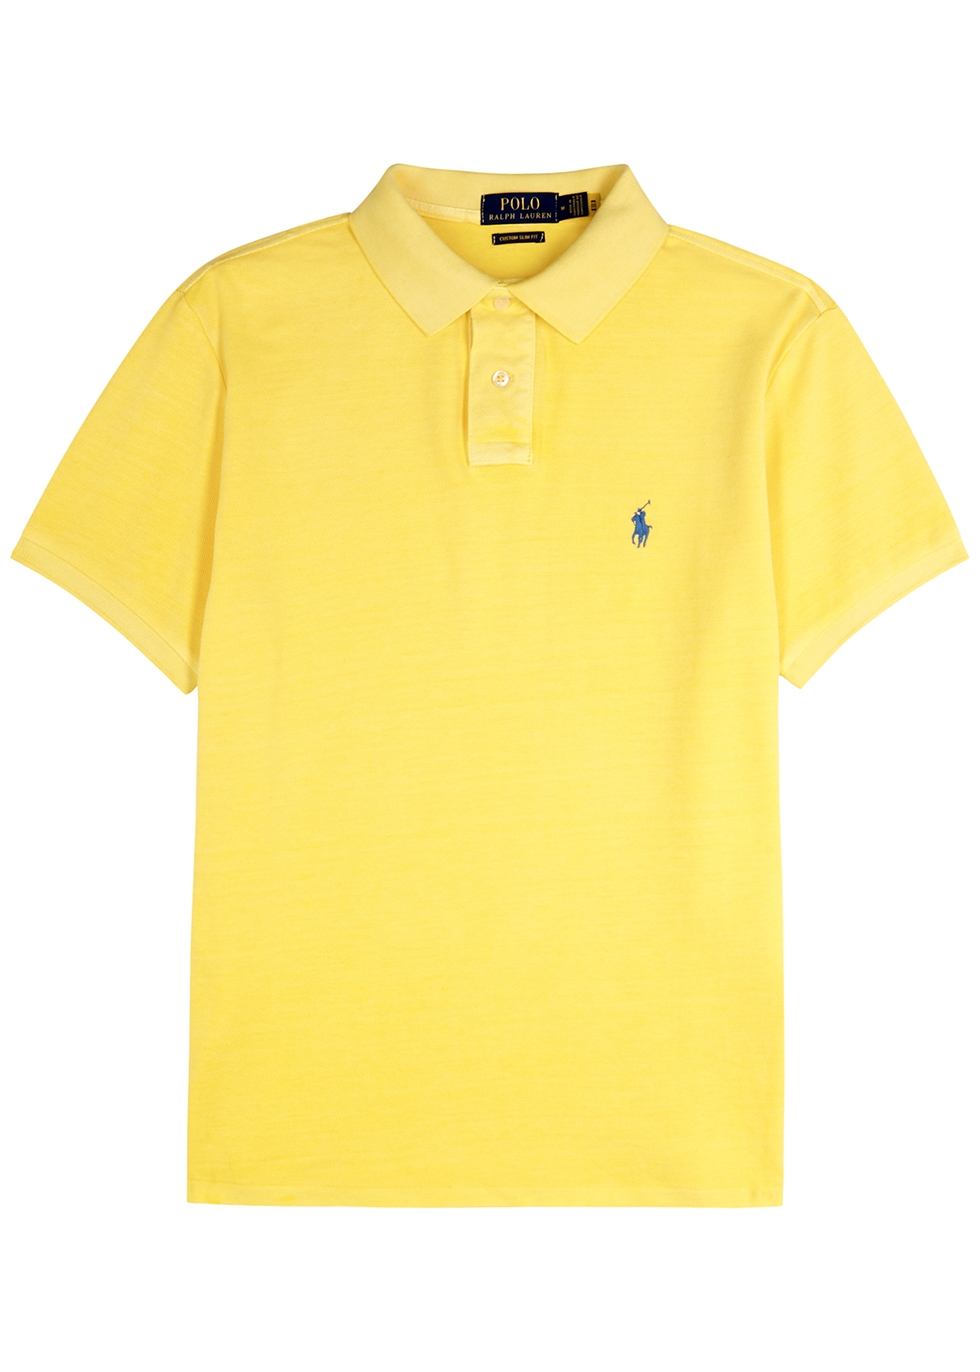 Yellow piqué cotton polo shirt